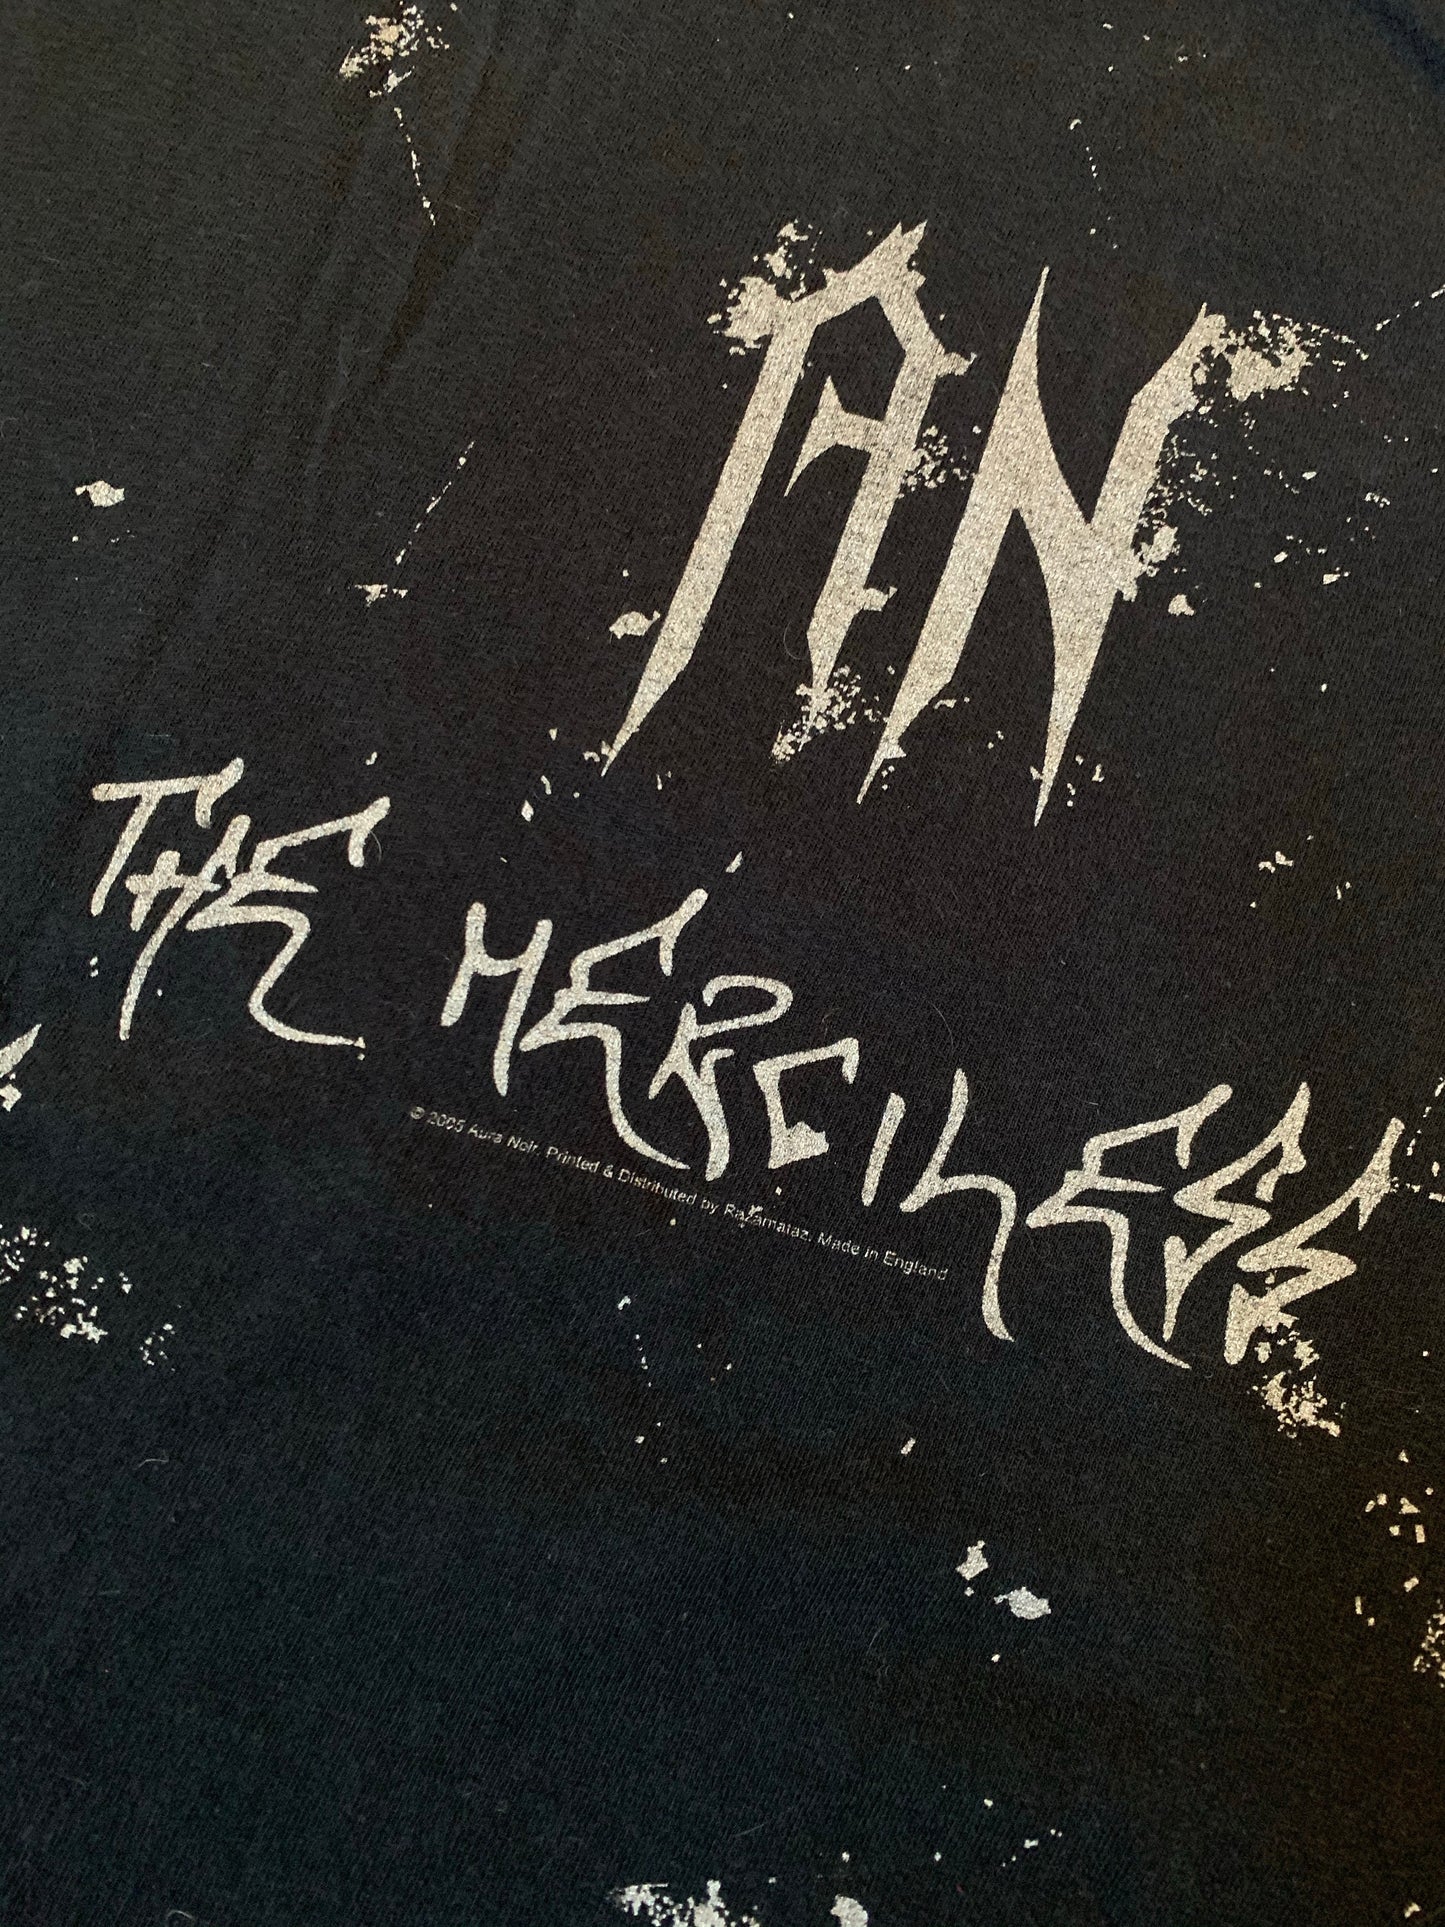 2005 Official Aura Noir The Merciless T-Shirt